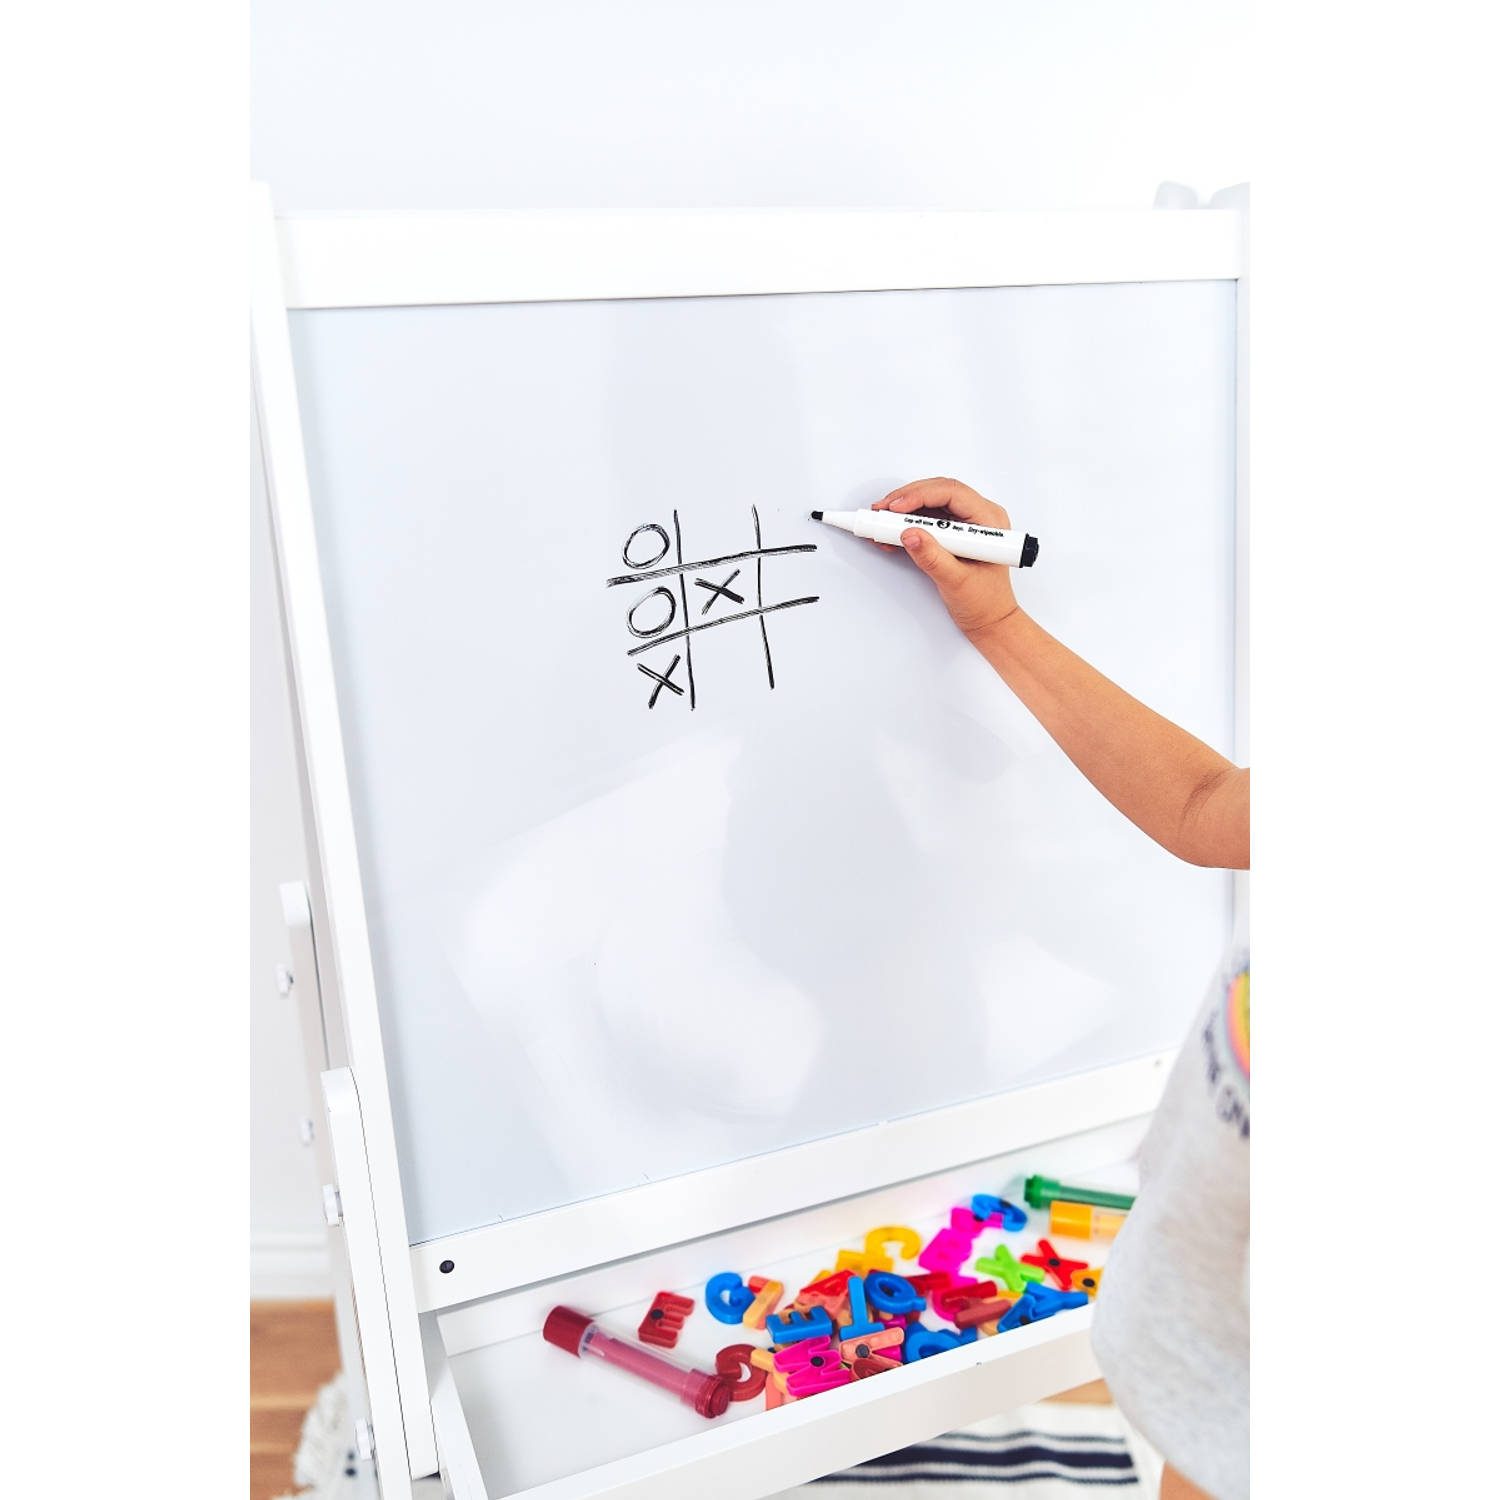 De daadwerkelijke voordat erfgoed Mamabrum Krijtbord Staand 115 cm - Schoolbord Voor Kinderen | Blokker